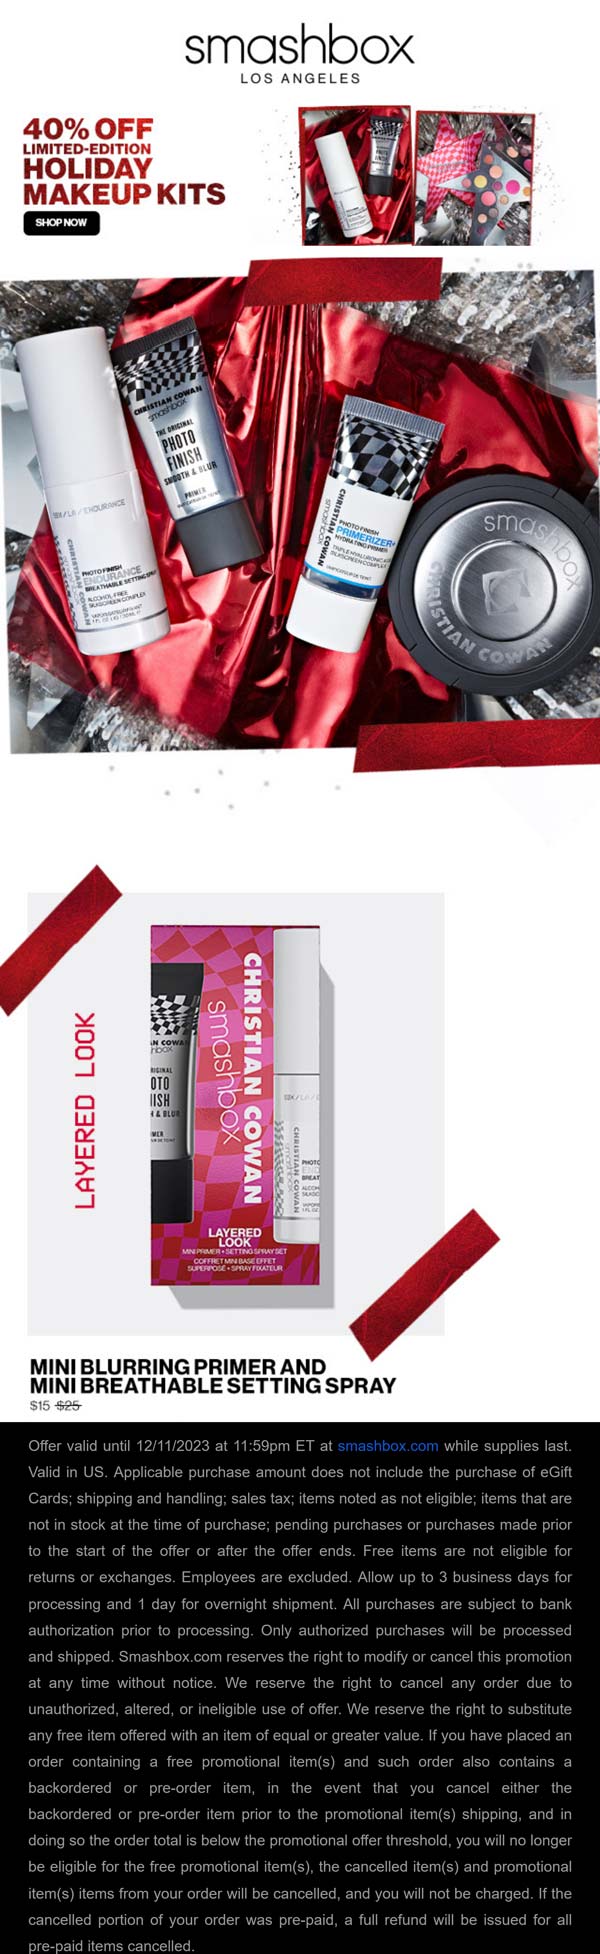 40% off holiday makeup kits at Smashbox cosmetics #smashbox